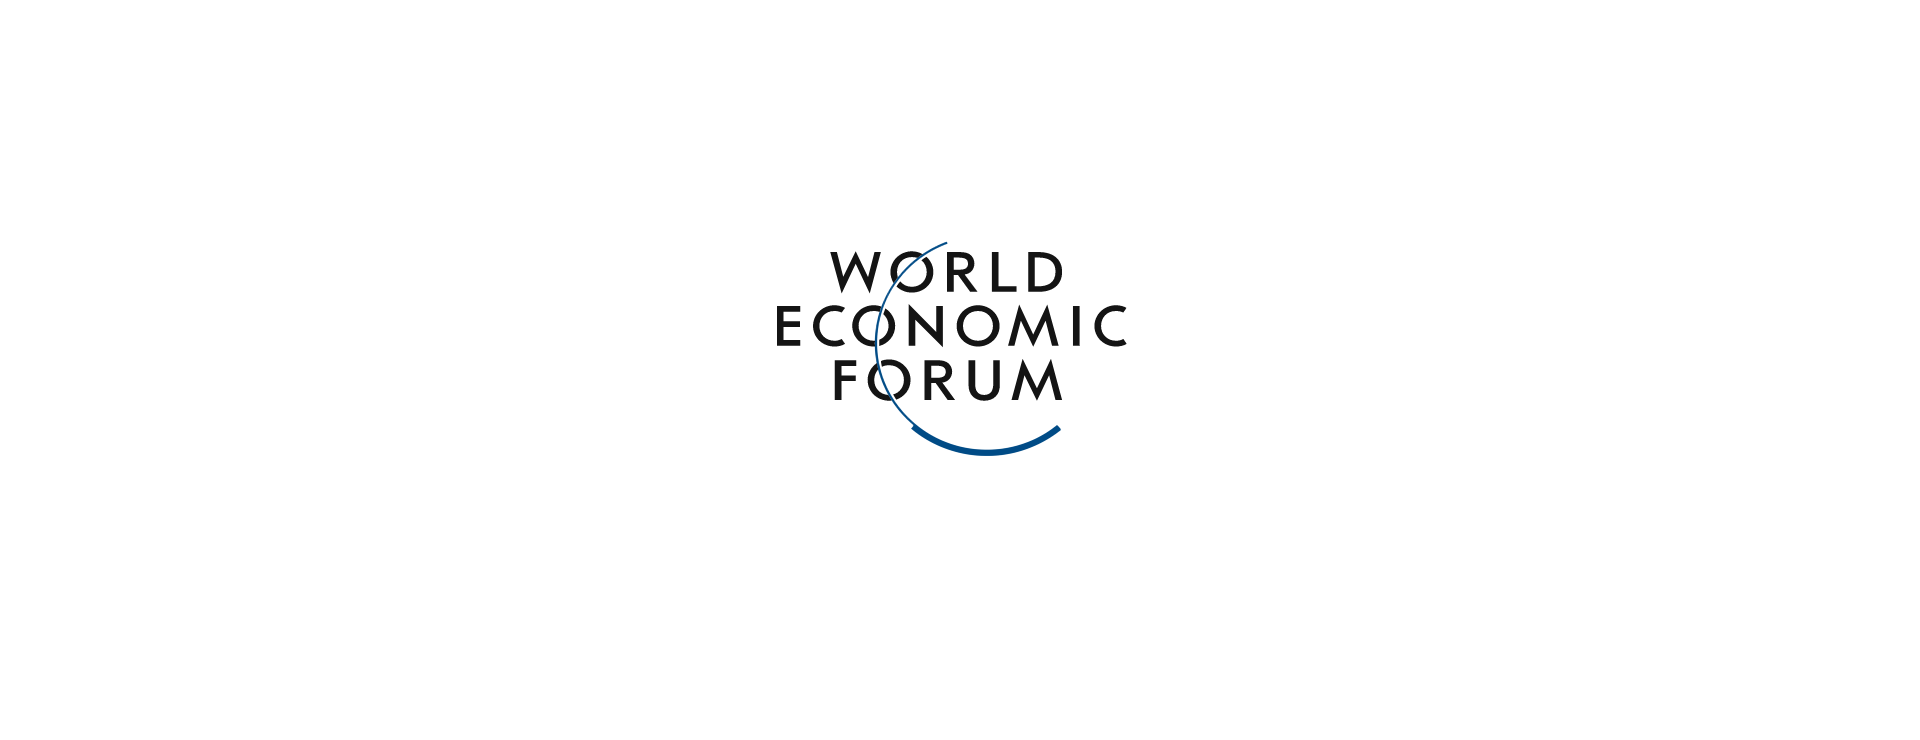 Форум мир приключений. Всемирный экономический форум. Всемирный экономический форум лого. Эмблема Всемирного экономического форума. World economic forum логотип.